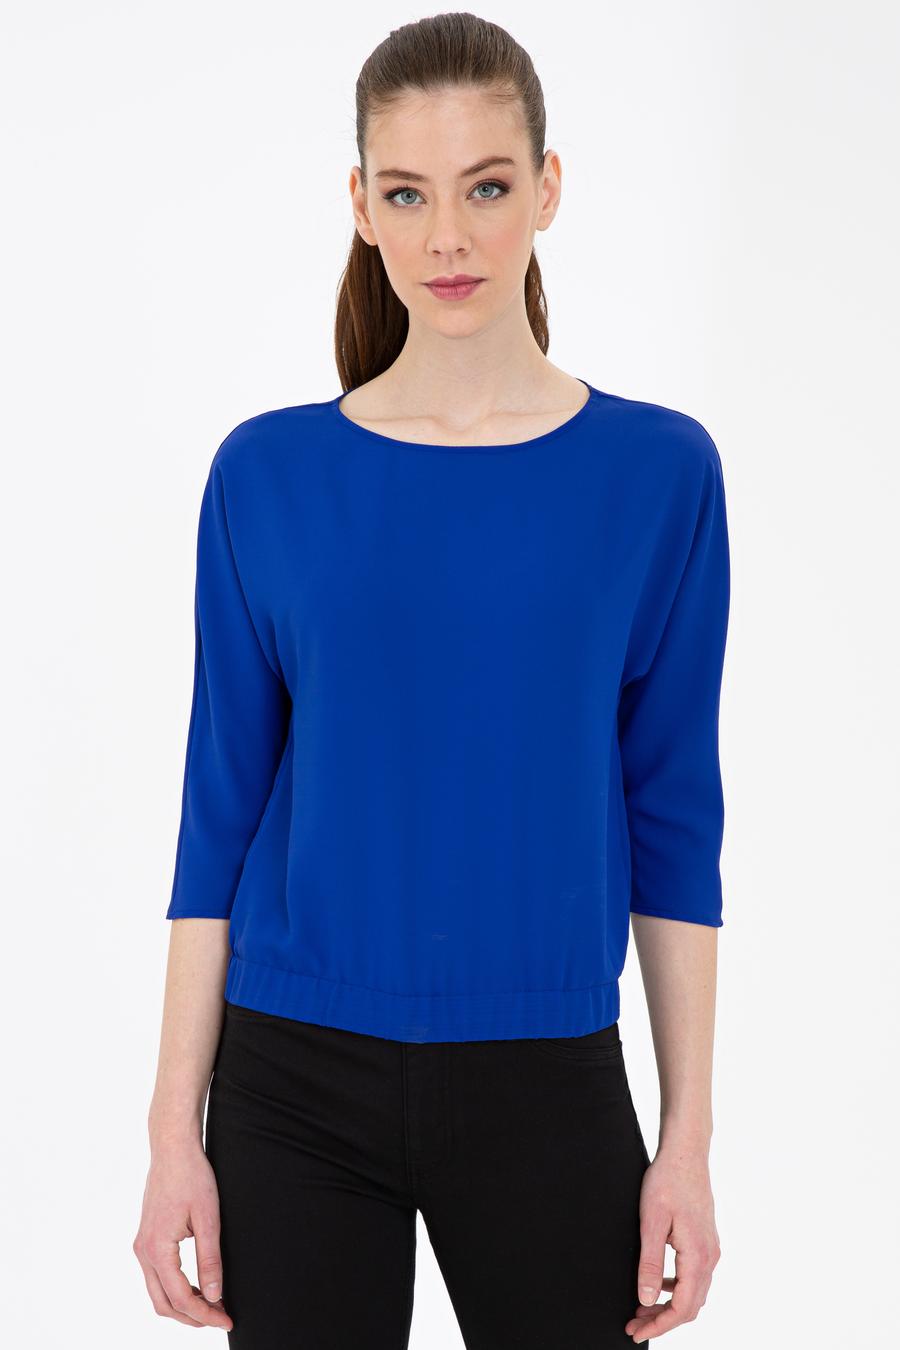 پیراهن  آبی  استاندارد  زنانه  پیرکاردین